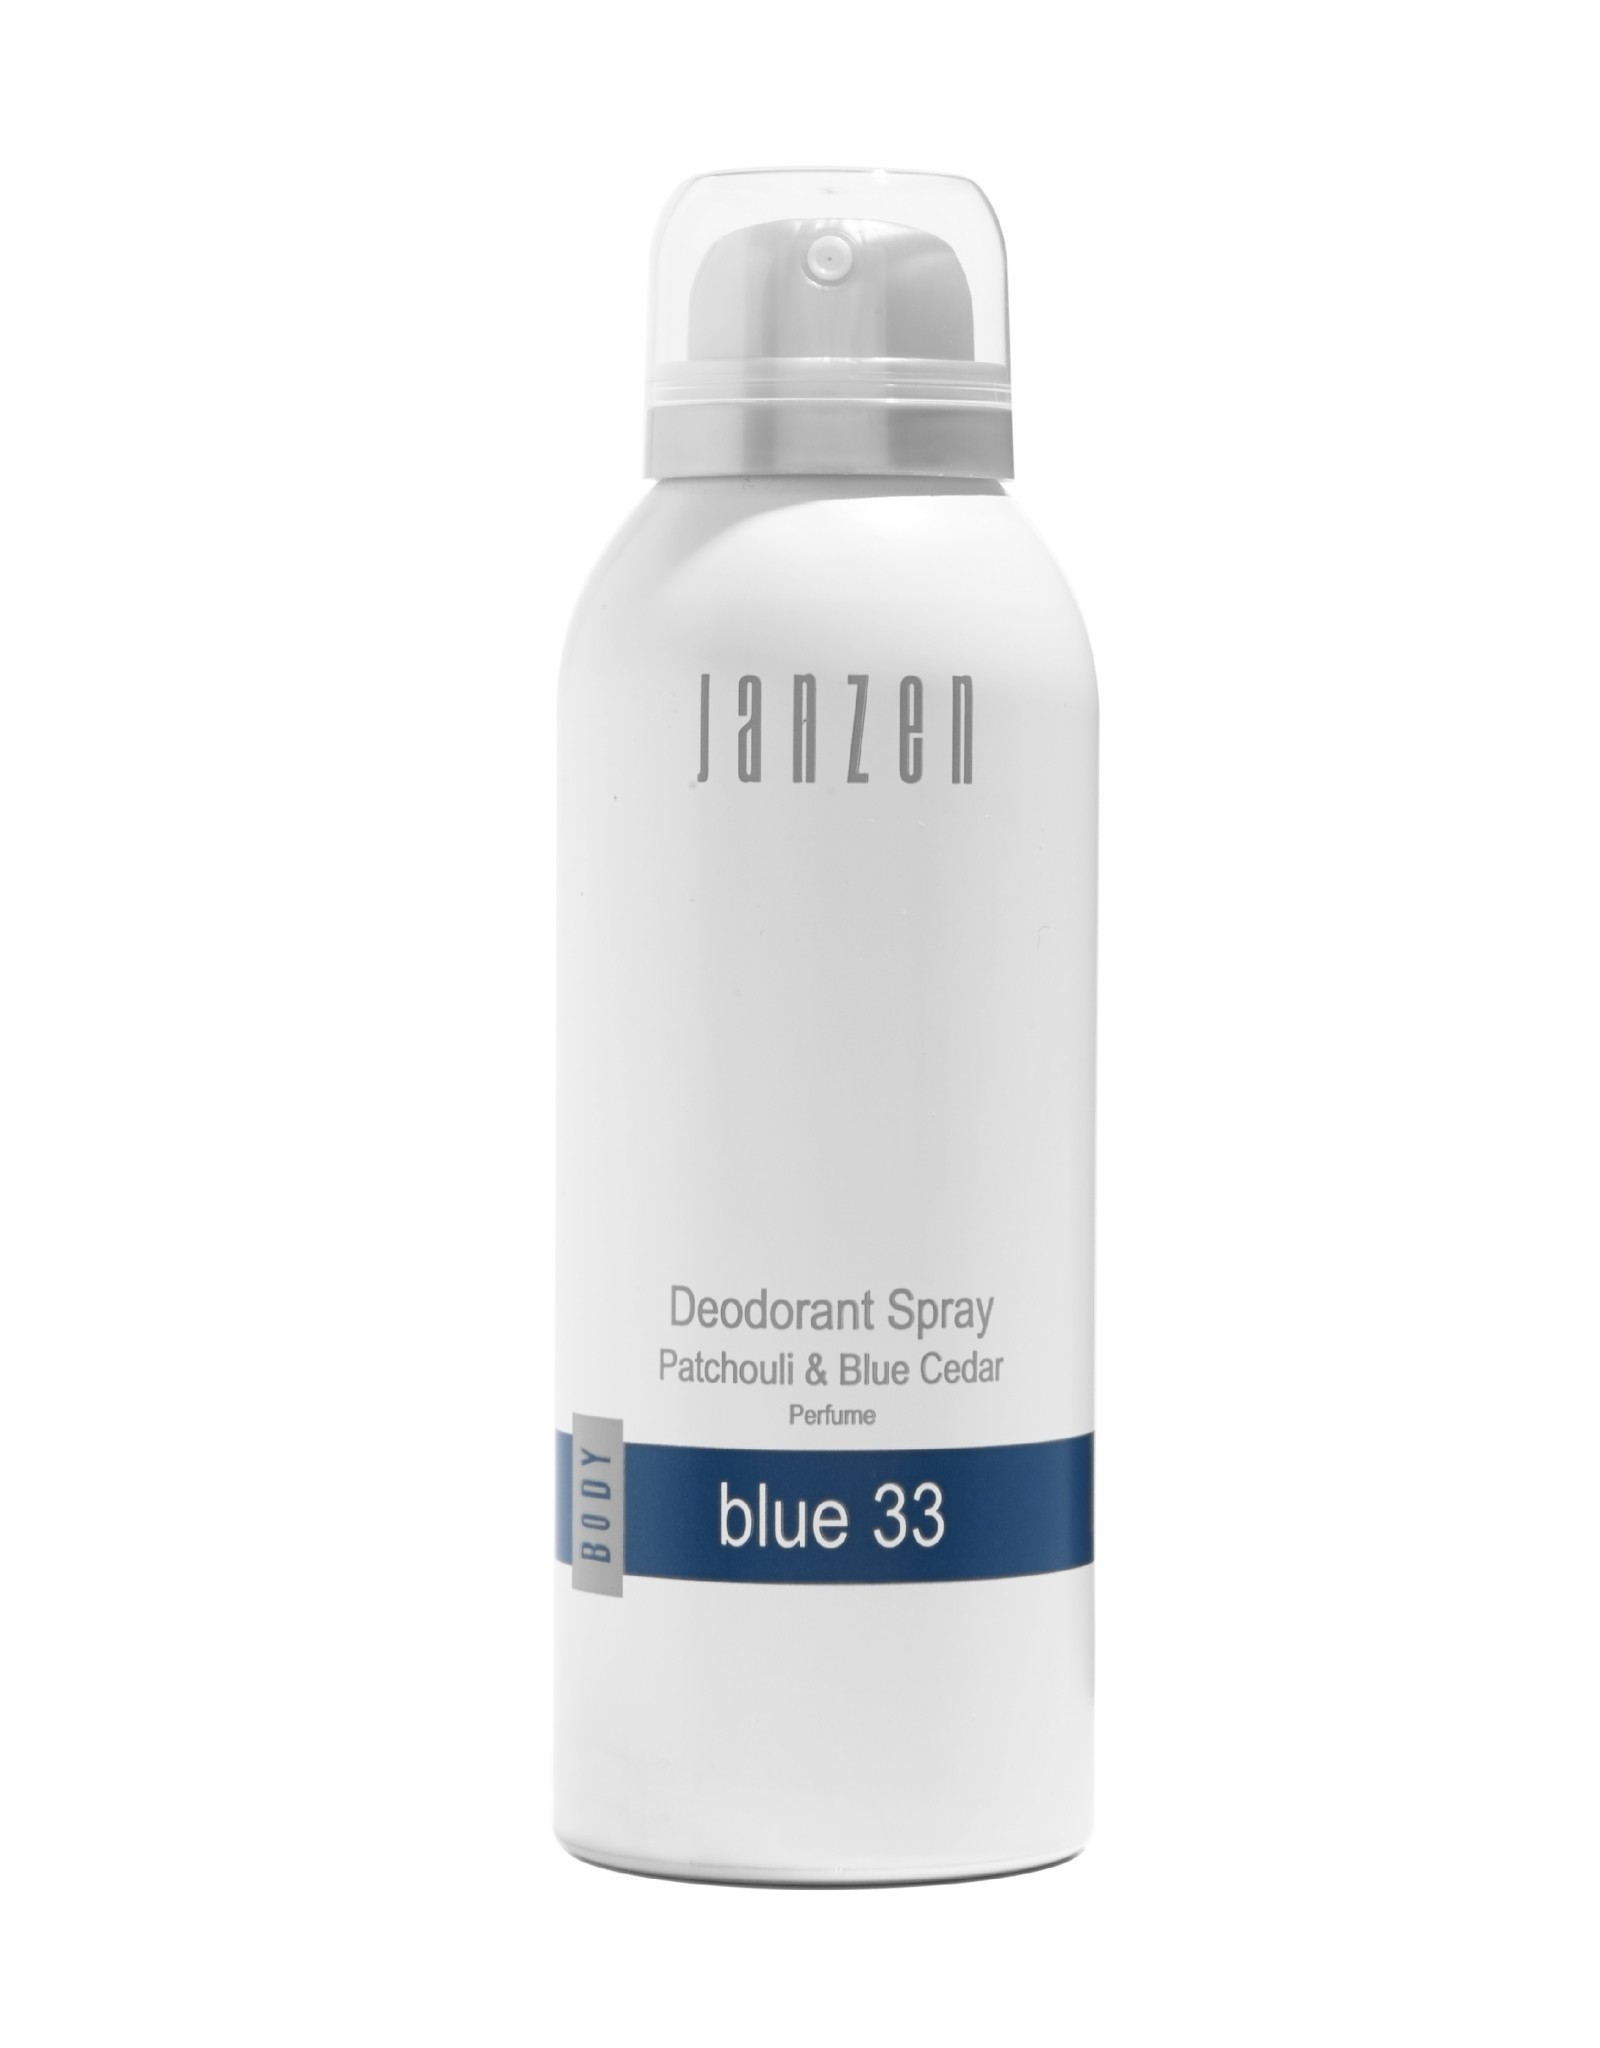 JANZEN Deodorant Spray Blue 33 150ml - JANZEN